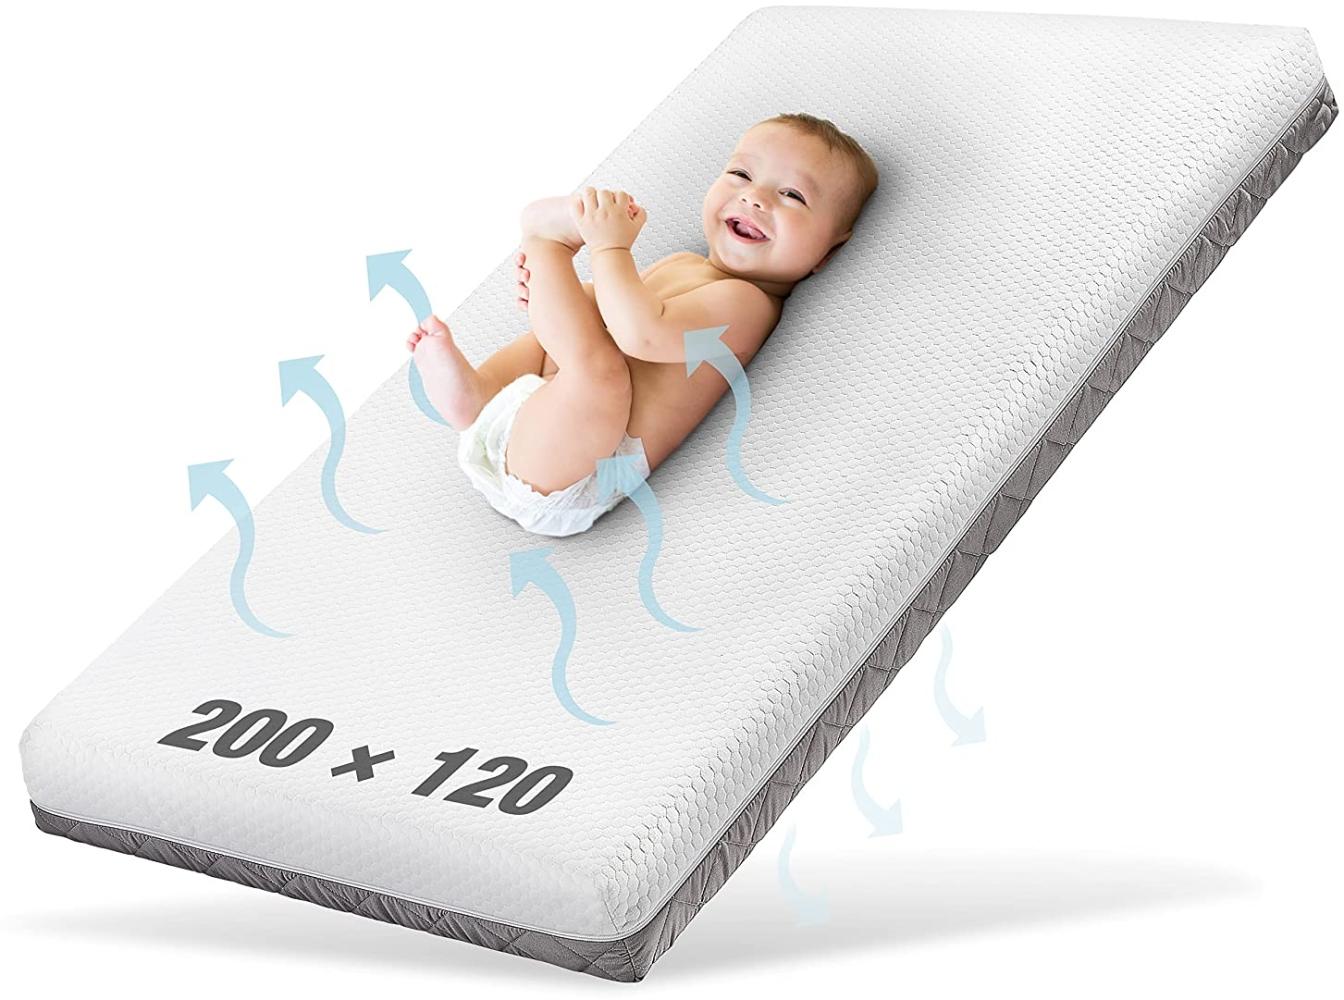 Ehrenkind® Kindermatratze Royal | Baby Matratze 120x200 | Babymatratze 120x200 mit innovativem 3D Mesh und Hygiene Tencel Bezug wasserdicht + luftdurchlässig Bild 1